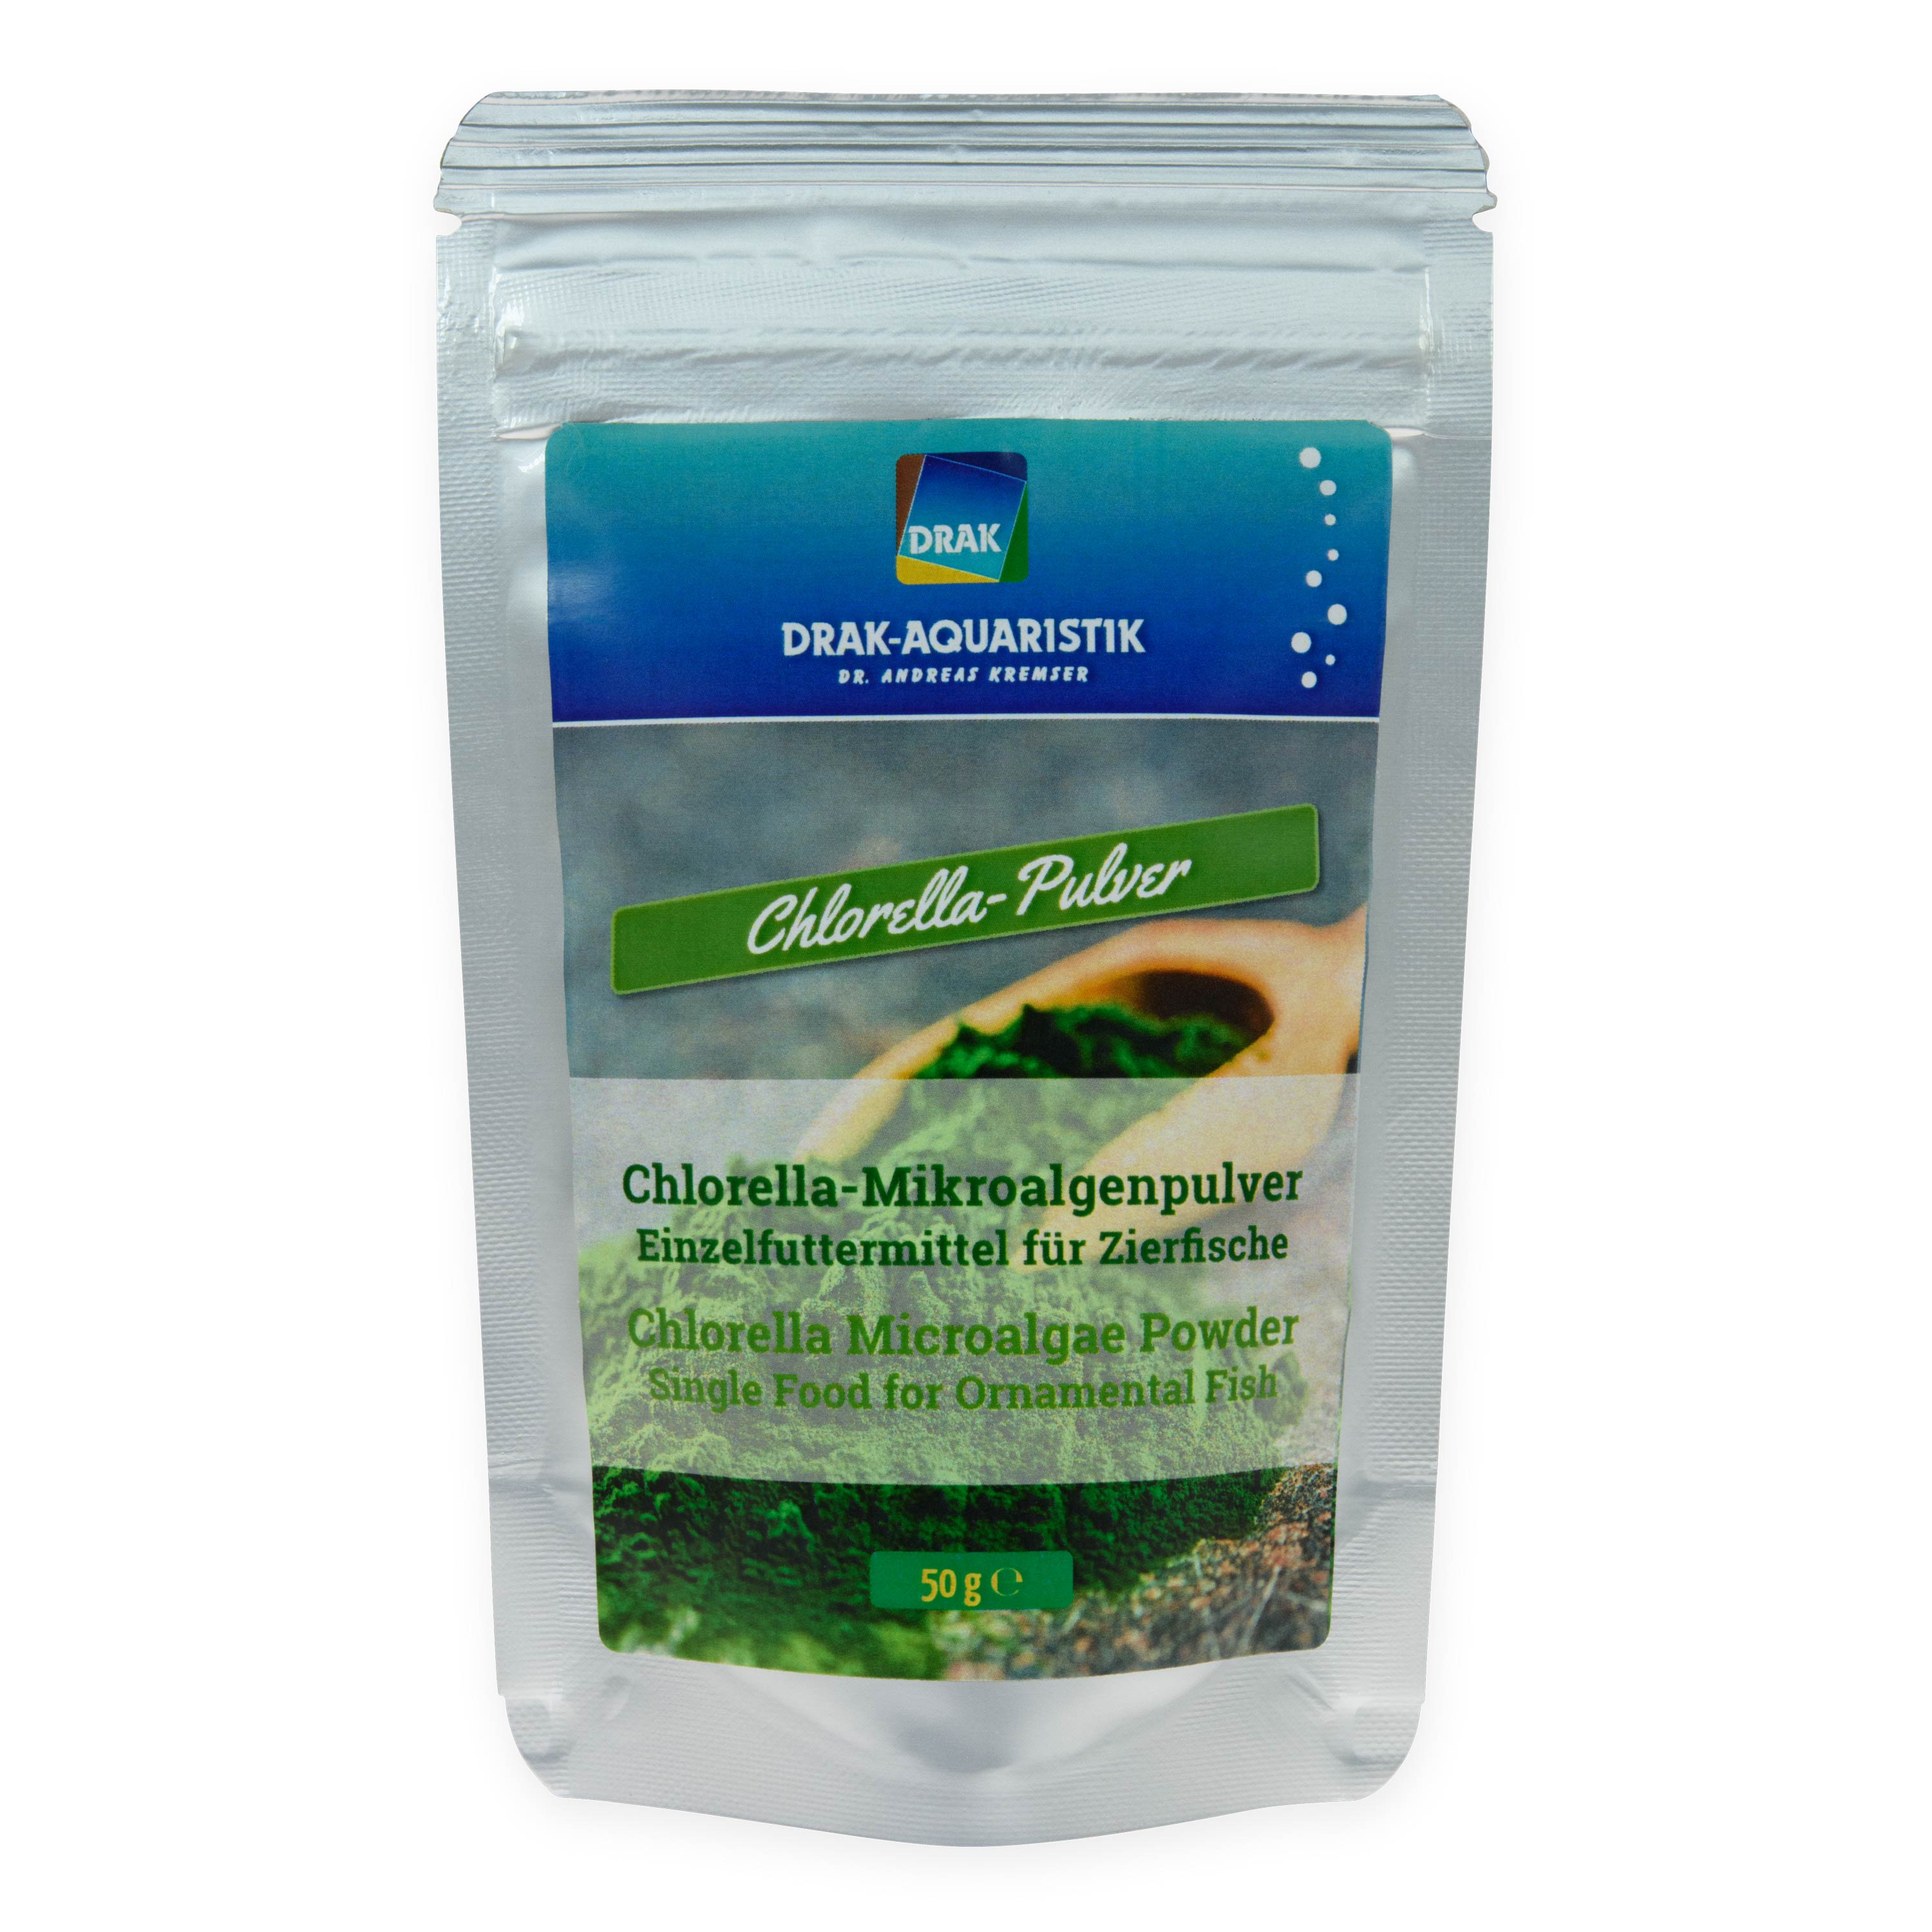 Chlorella-Mikroalgenpulver 50 g Standbodenbeutel